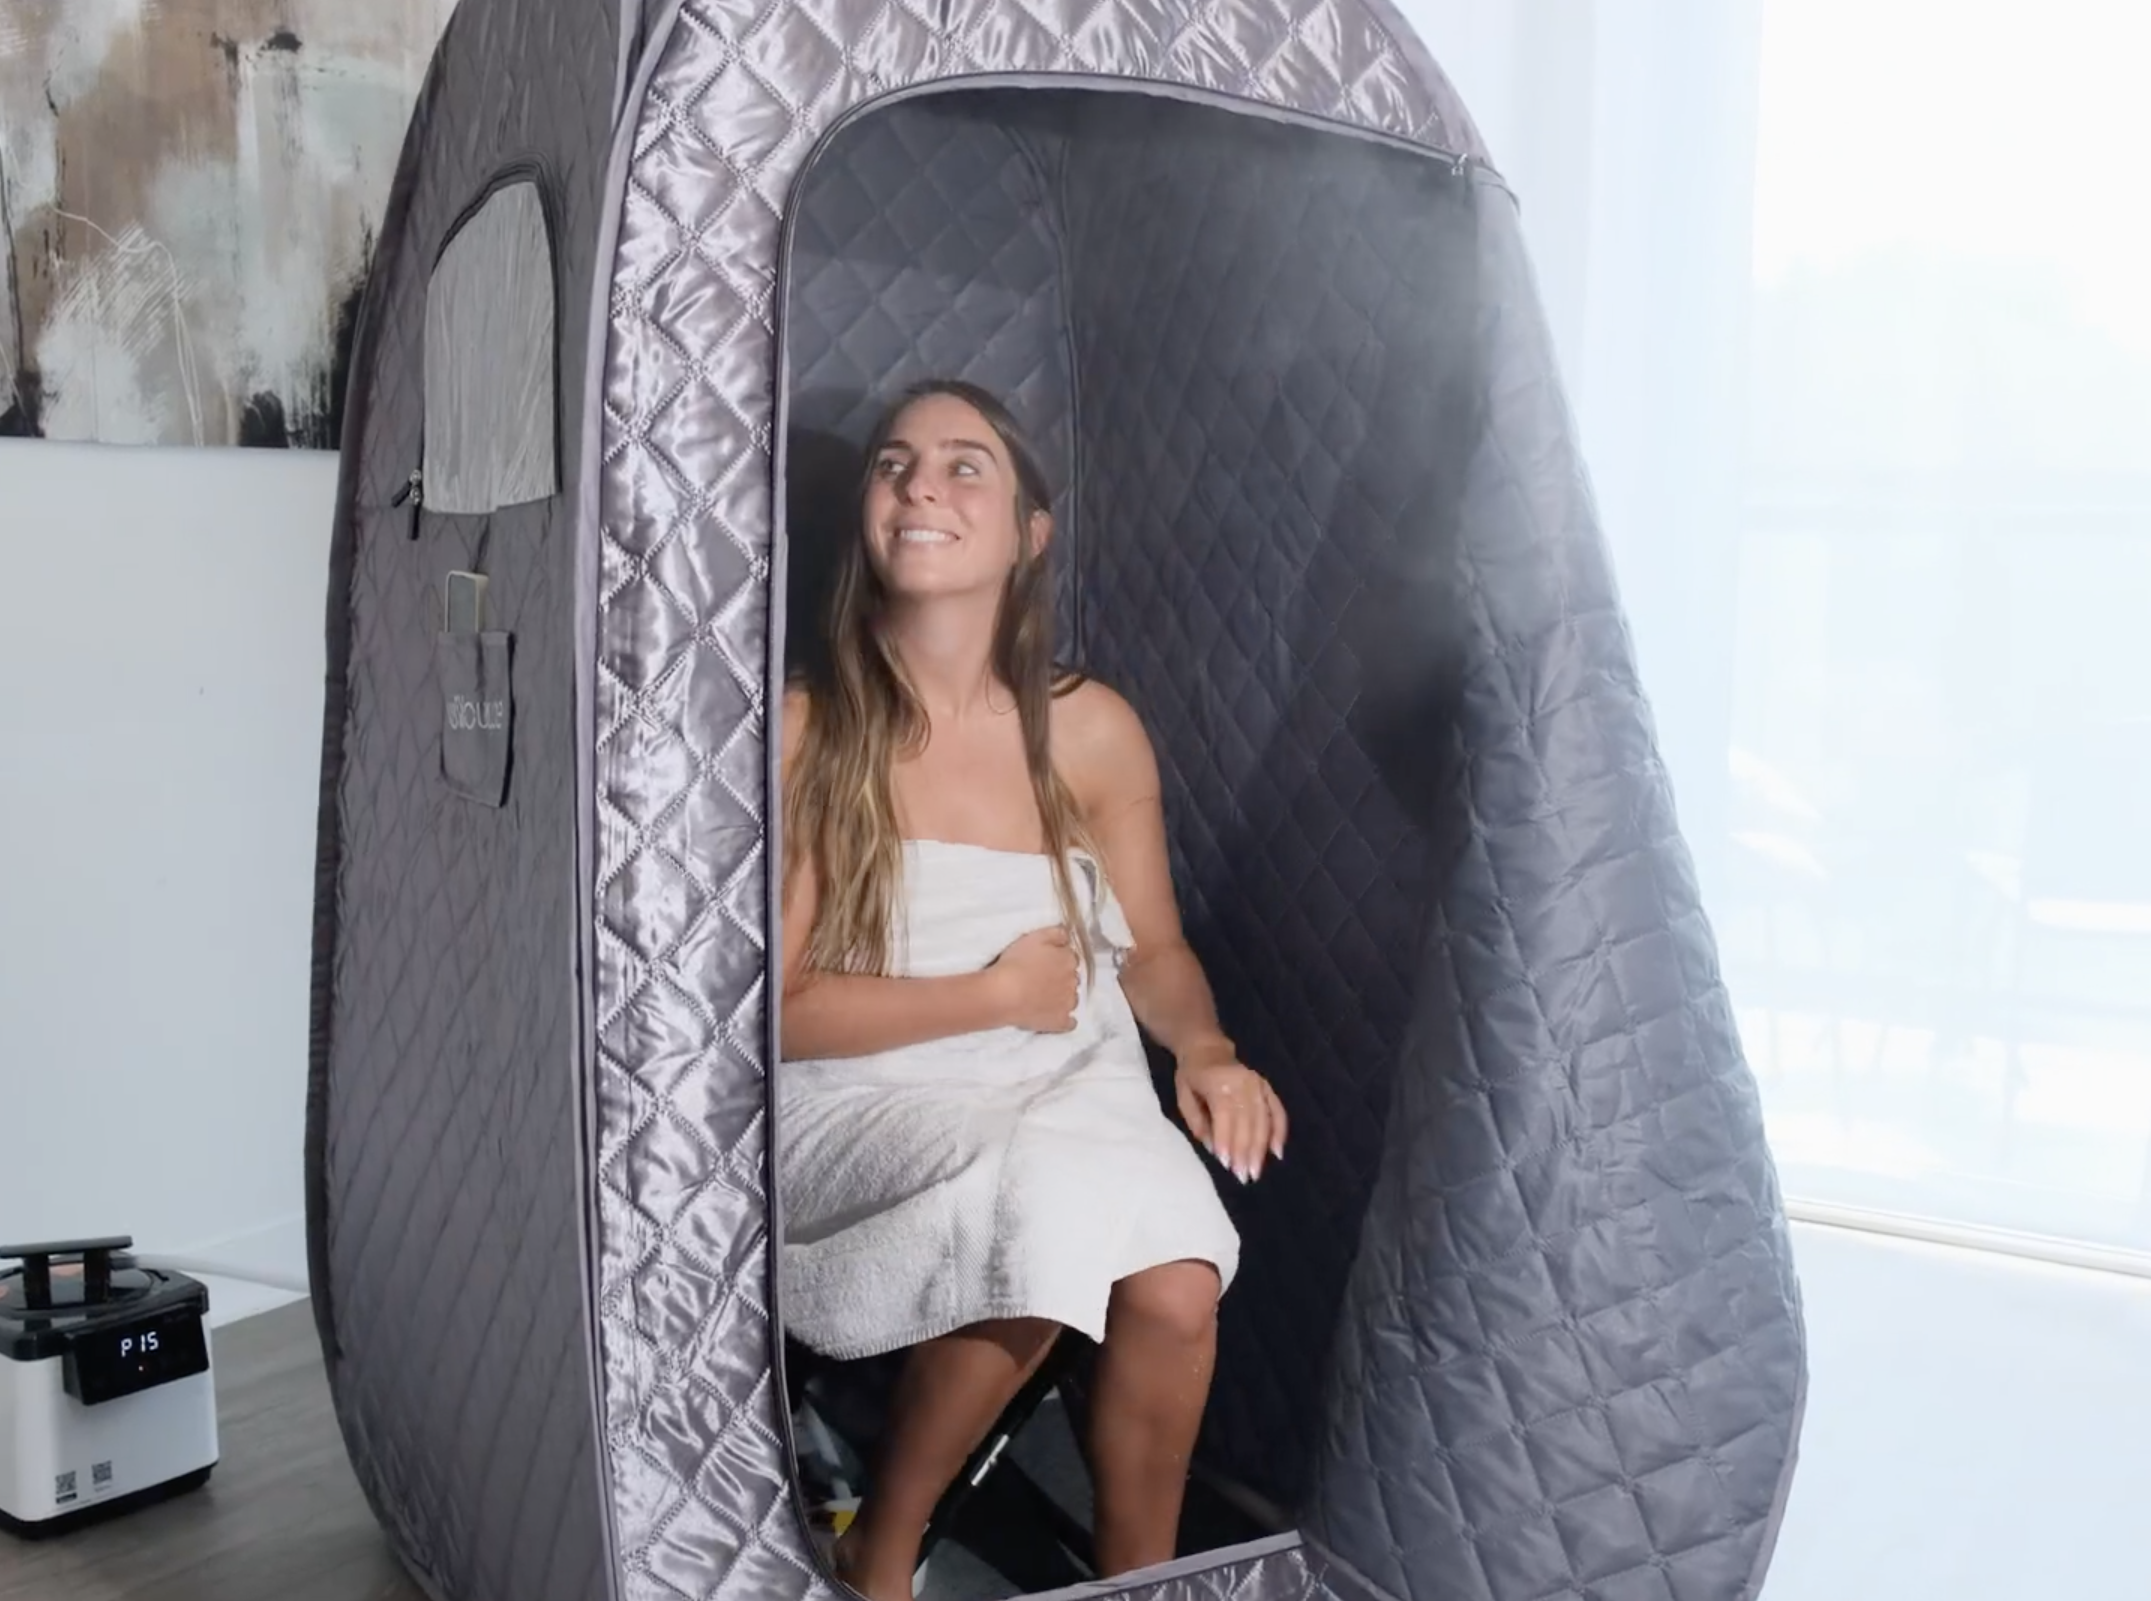 person sitting in the sauna pod